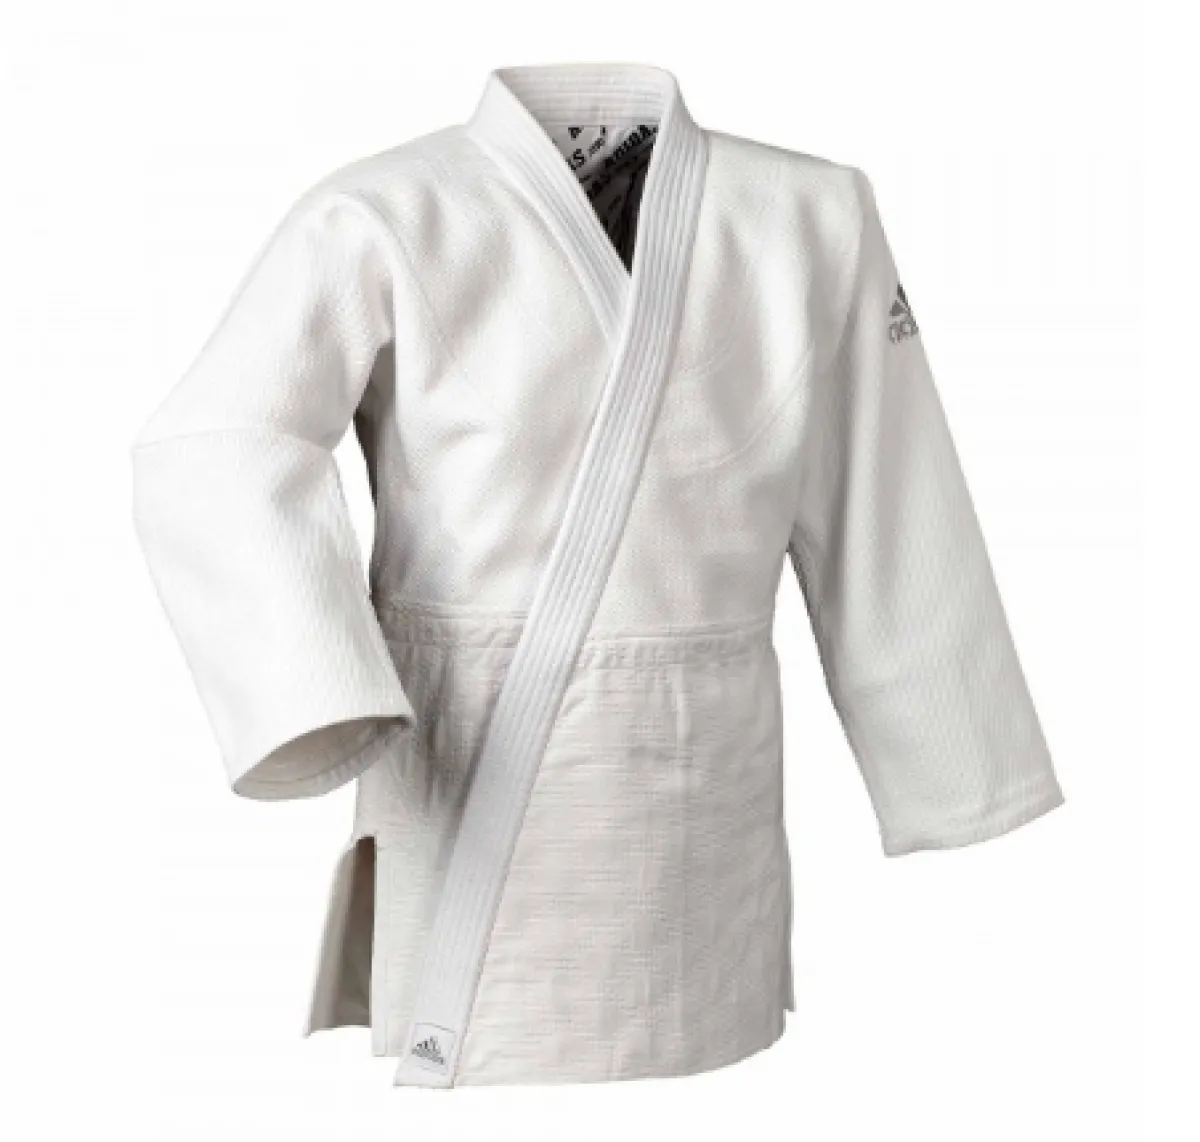 Judo suit Adidas Millenium J990 white